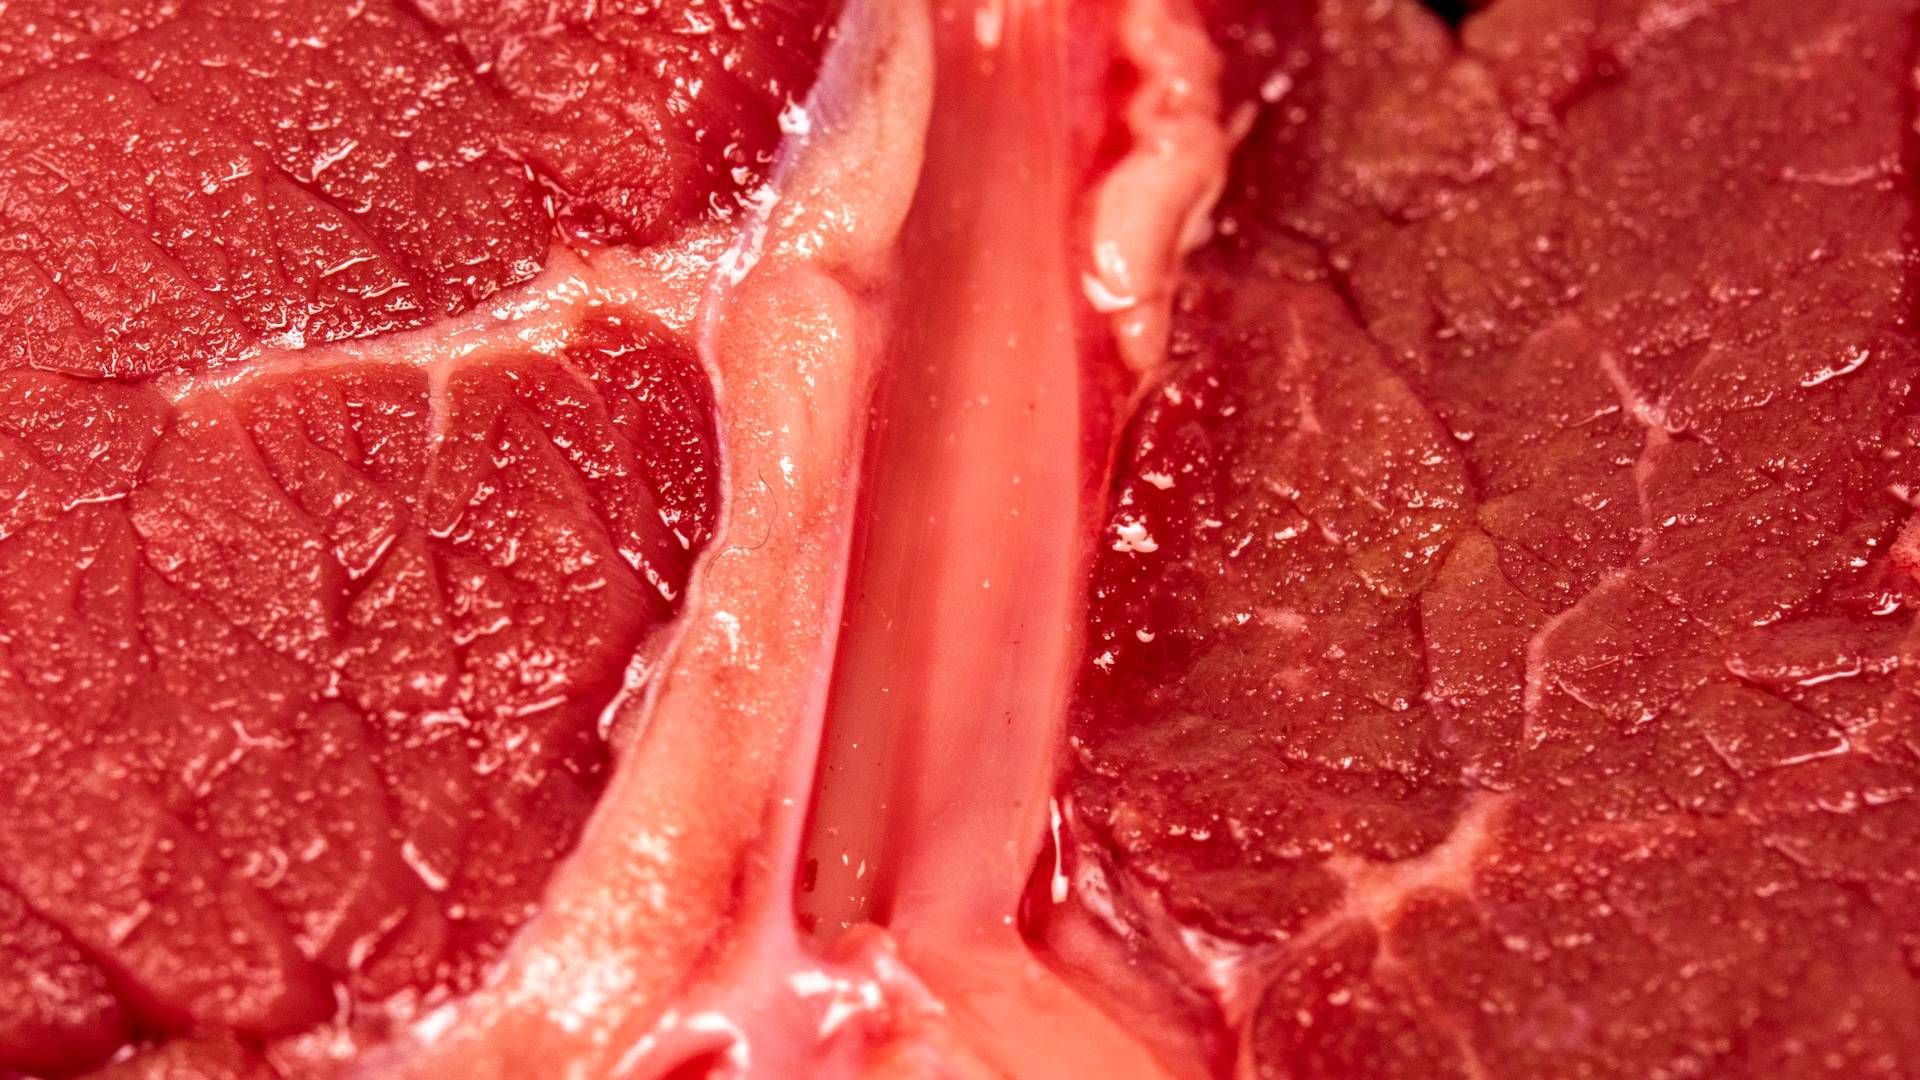 Sagen er ikke så bøf for Vion Food Group. Manglen på kreaturer medføre nu lukning af slagteri. | Foto: Miriam Dalsgaard